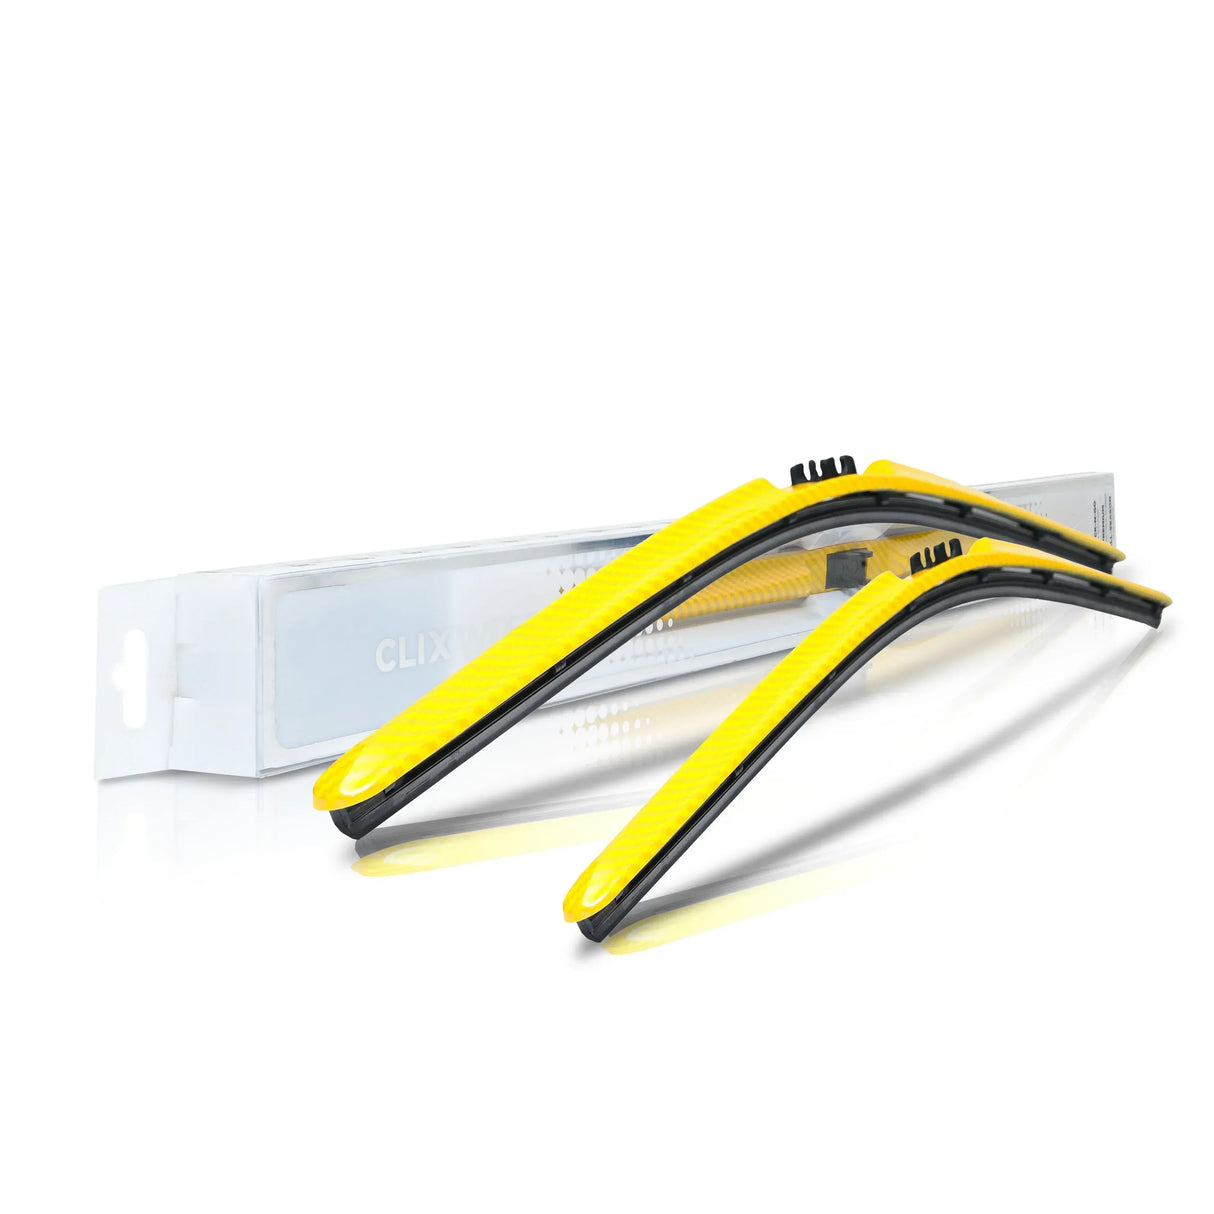 Kia K900 Windshield Wiper Blades